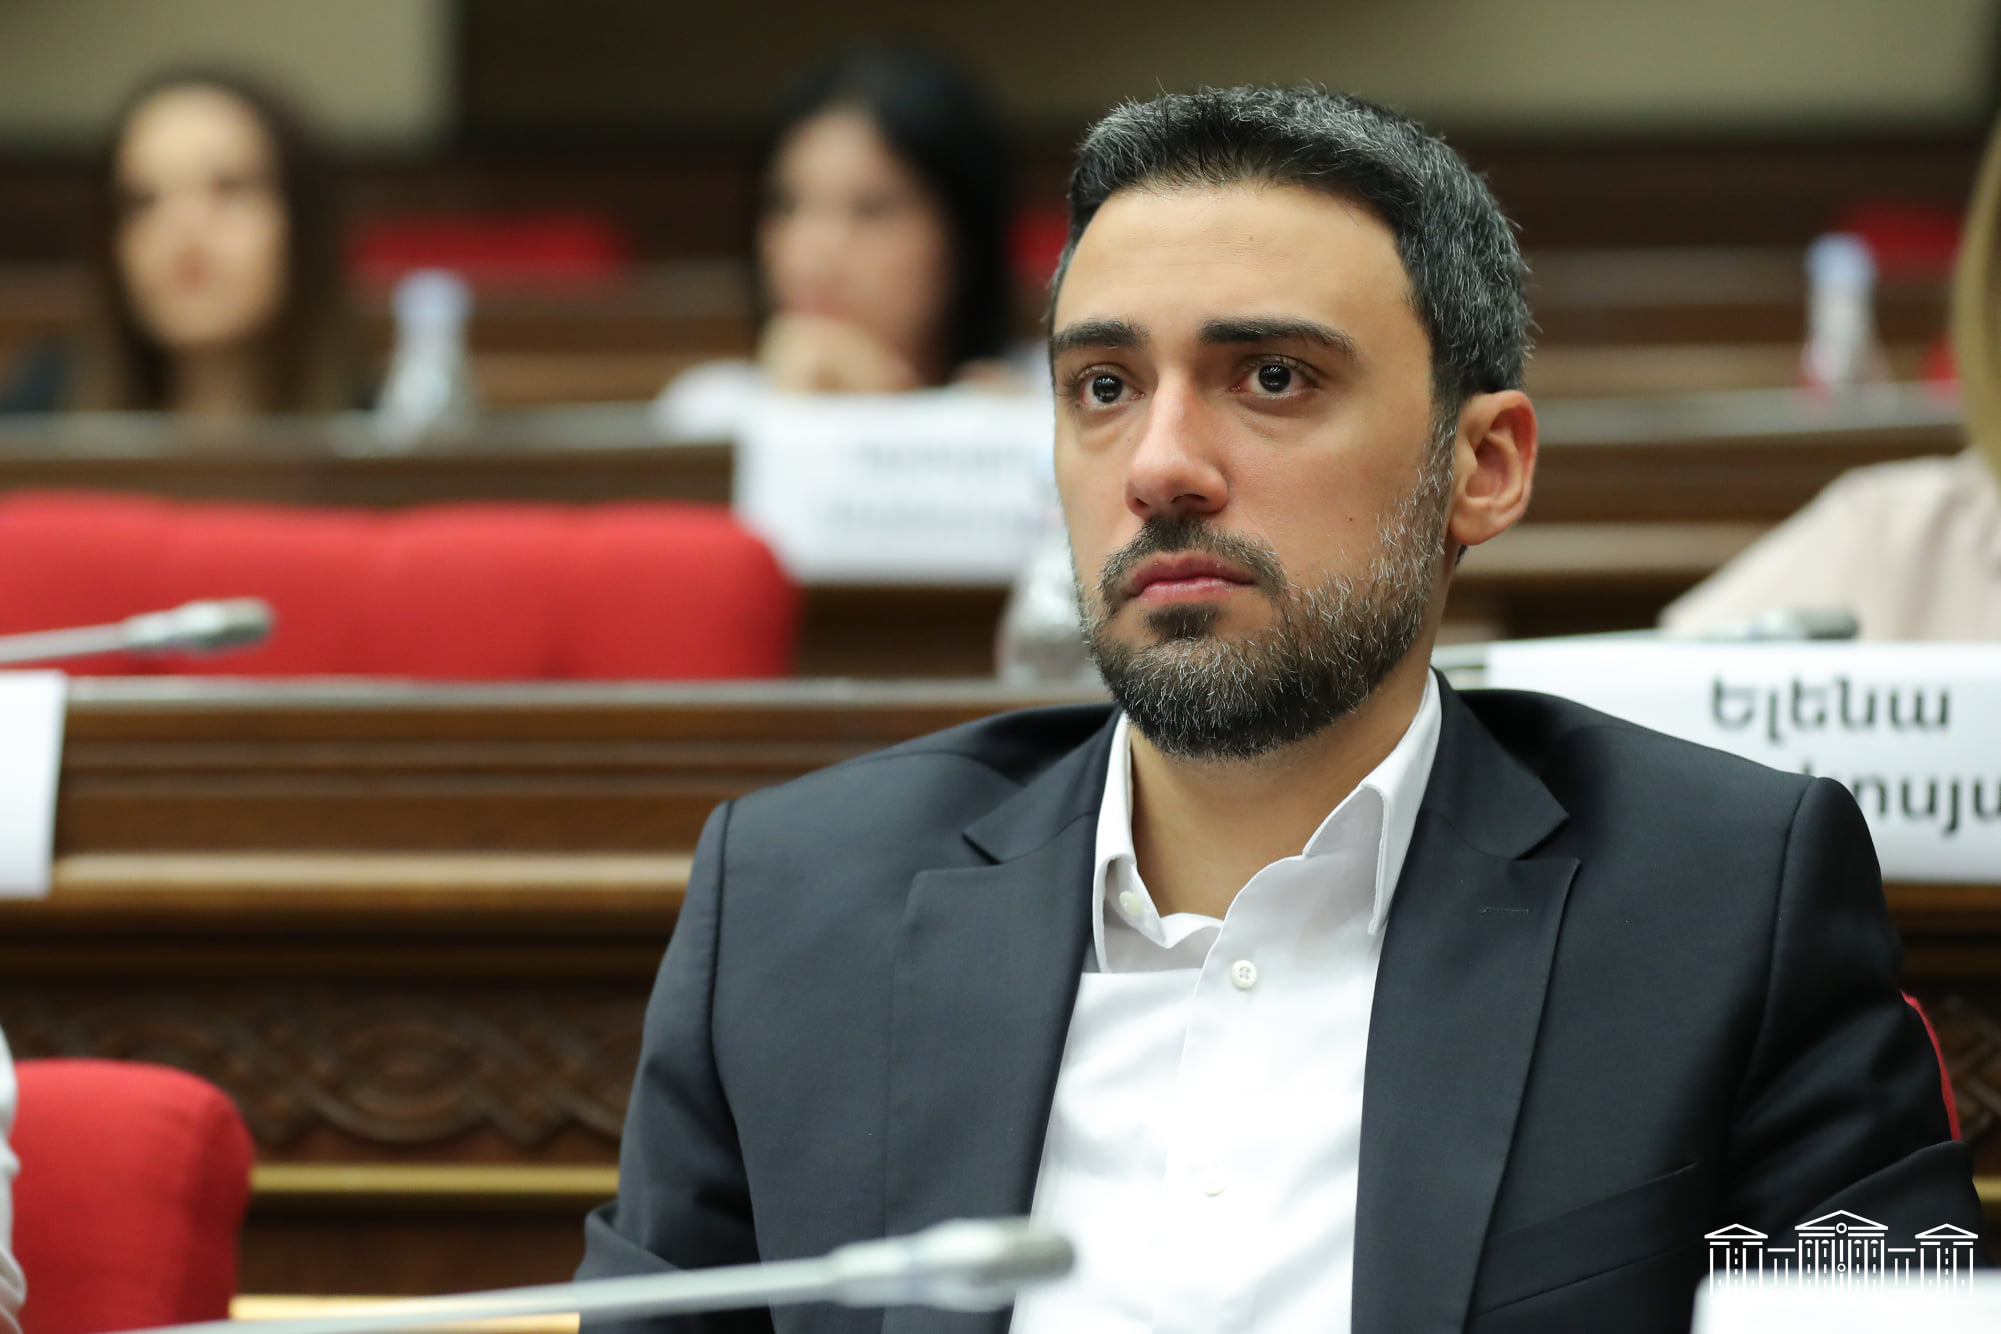 Ժողովրդավարական բաստիոն Հայաստանում 8 ամիս հետո դատախազությունը կարողացավ վերադարձնել մակագրման համակարգի բանալիները, բայց ոչ ԲԴԽ-ն. Արամ Վարդևանյան